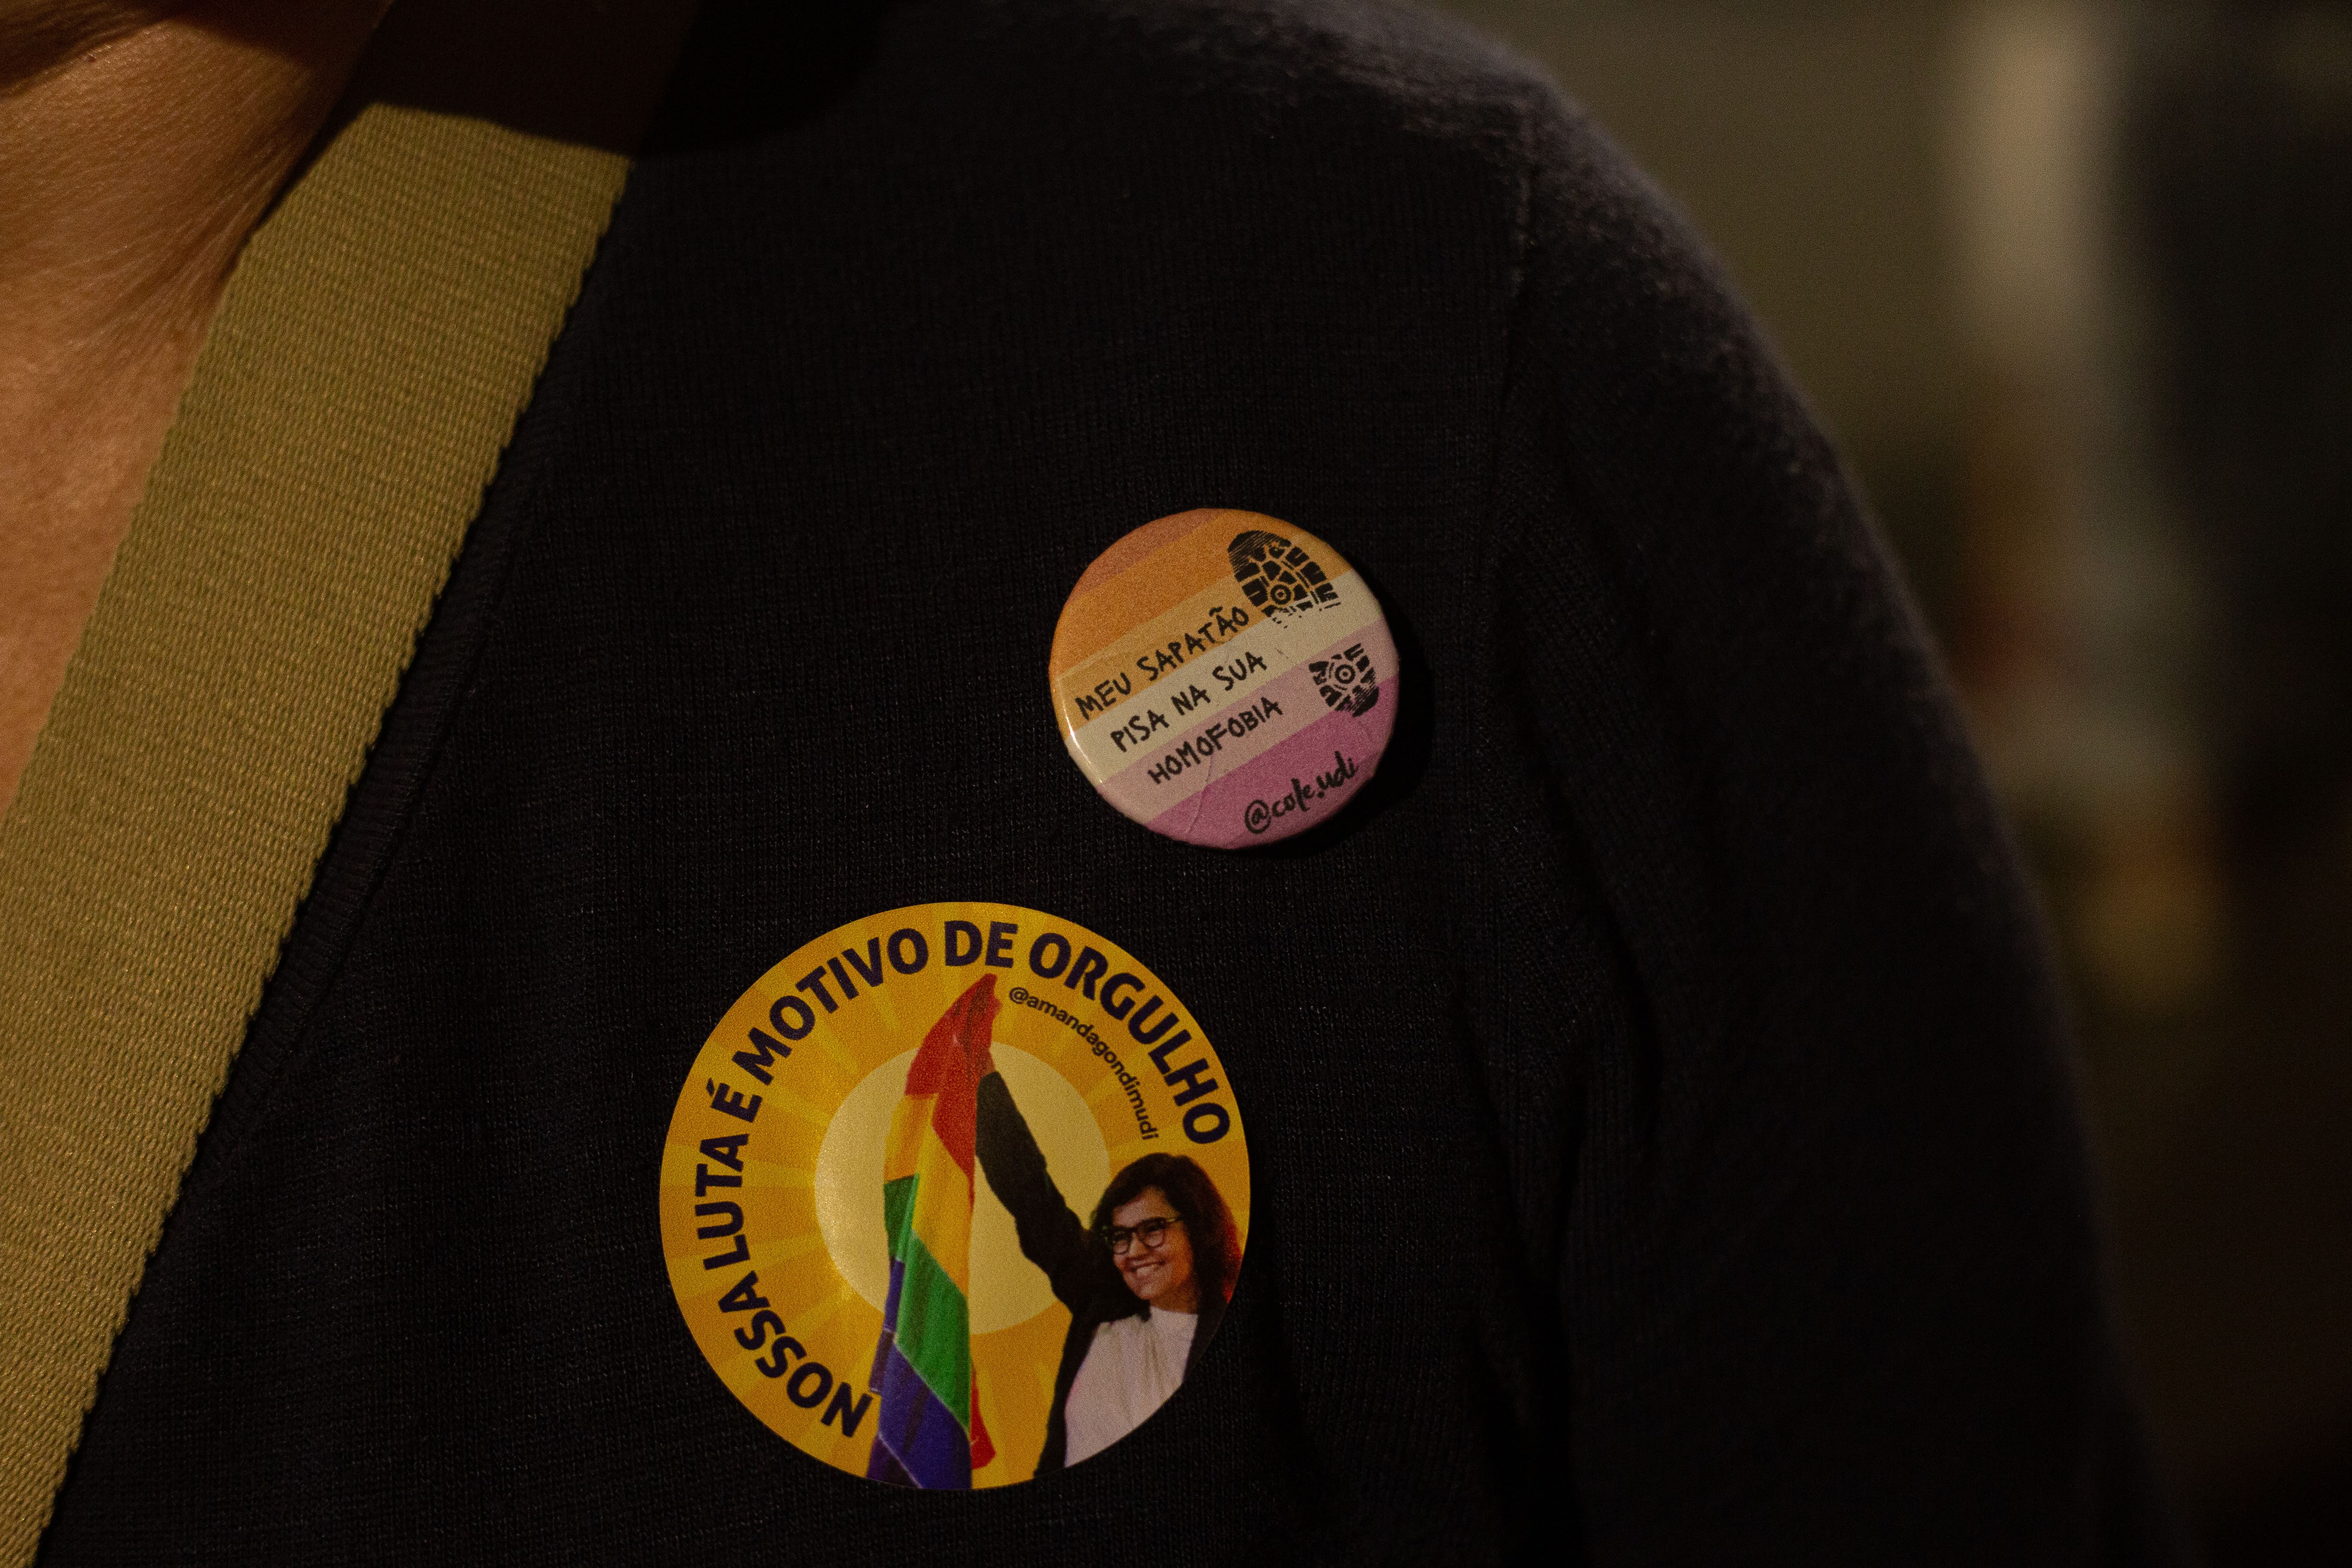 Foto em primeiro plano mostra blusa com adesivo da vereadora Amanda Gondim, segurando bandeira LGBTQIAPN+ e boton com a escrita 'Meu sapatão pisa na sua homofobia'